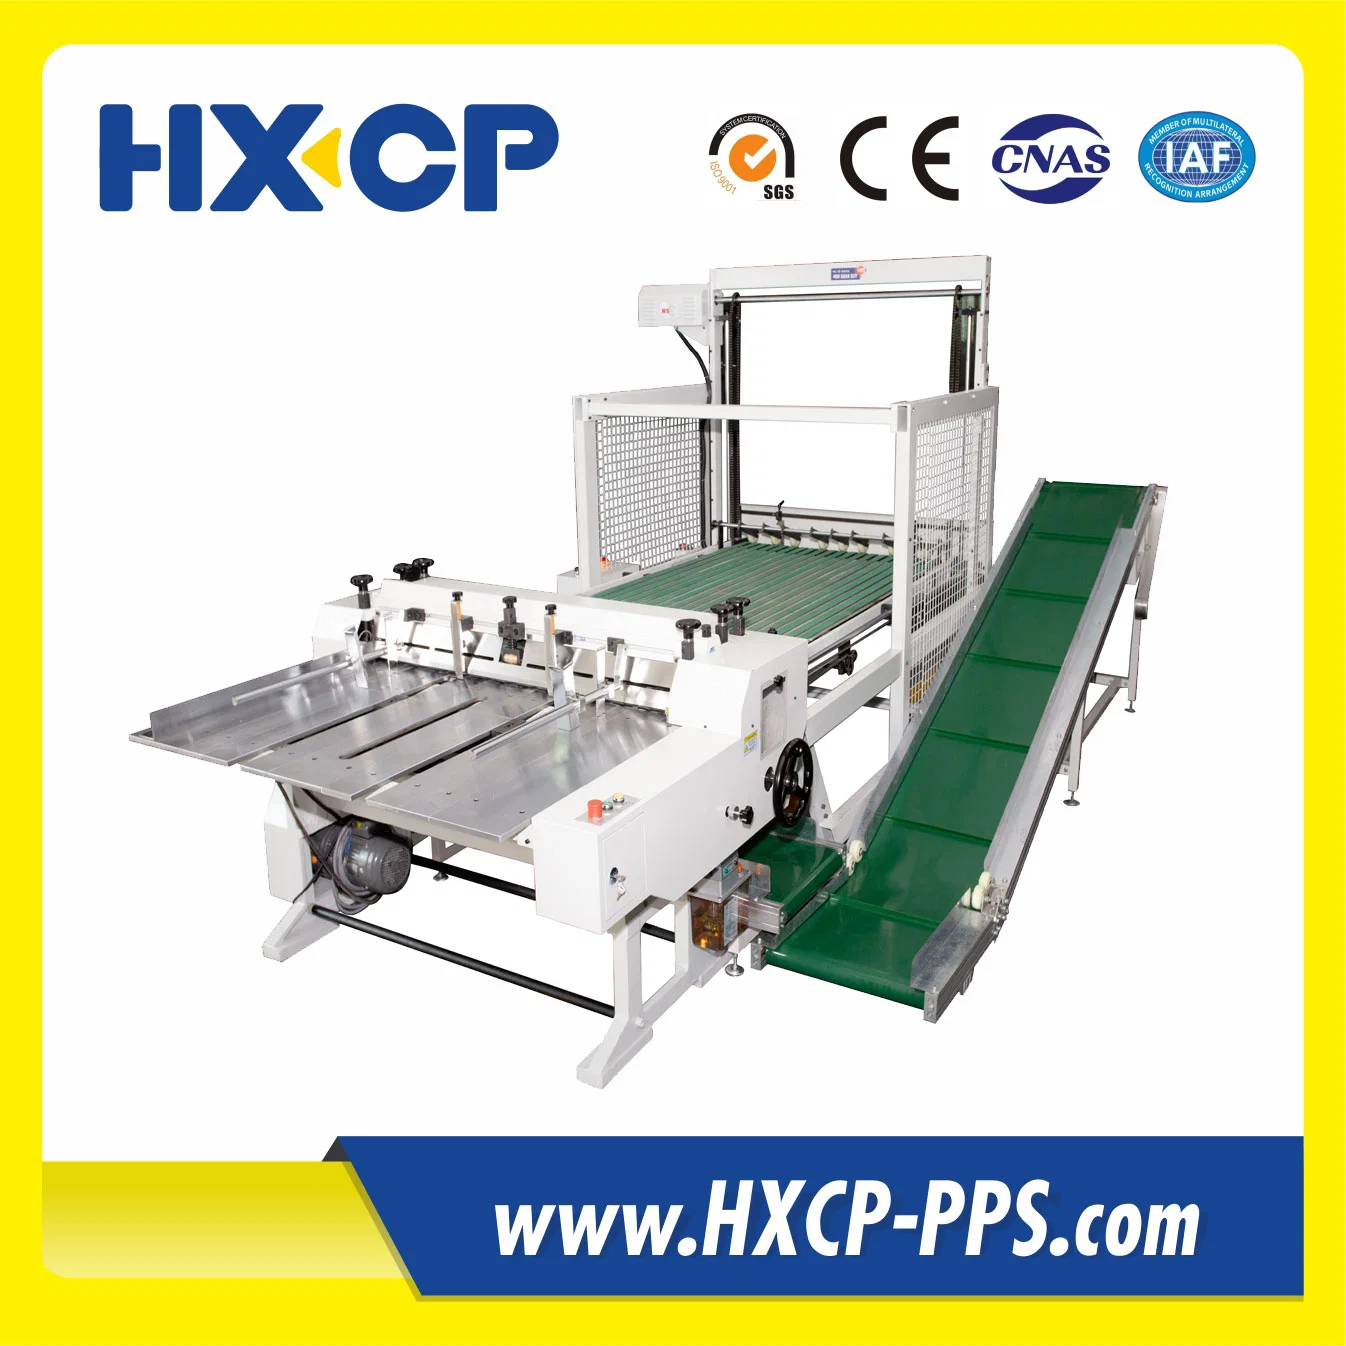 Hxcp Hx1200 لوحة ورقية آلية لوحة نقّال ورق بطاقات قطع وتسيير الماكينة